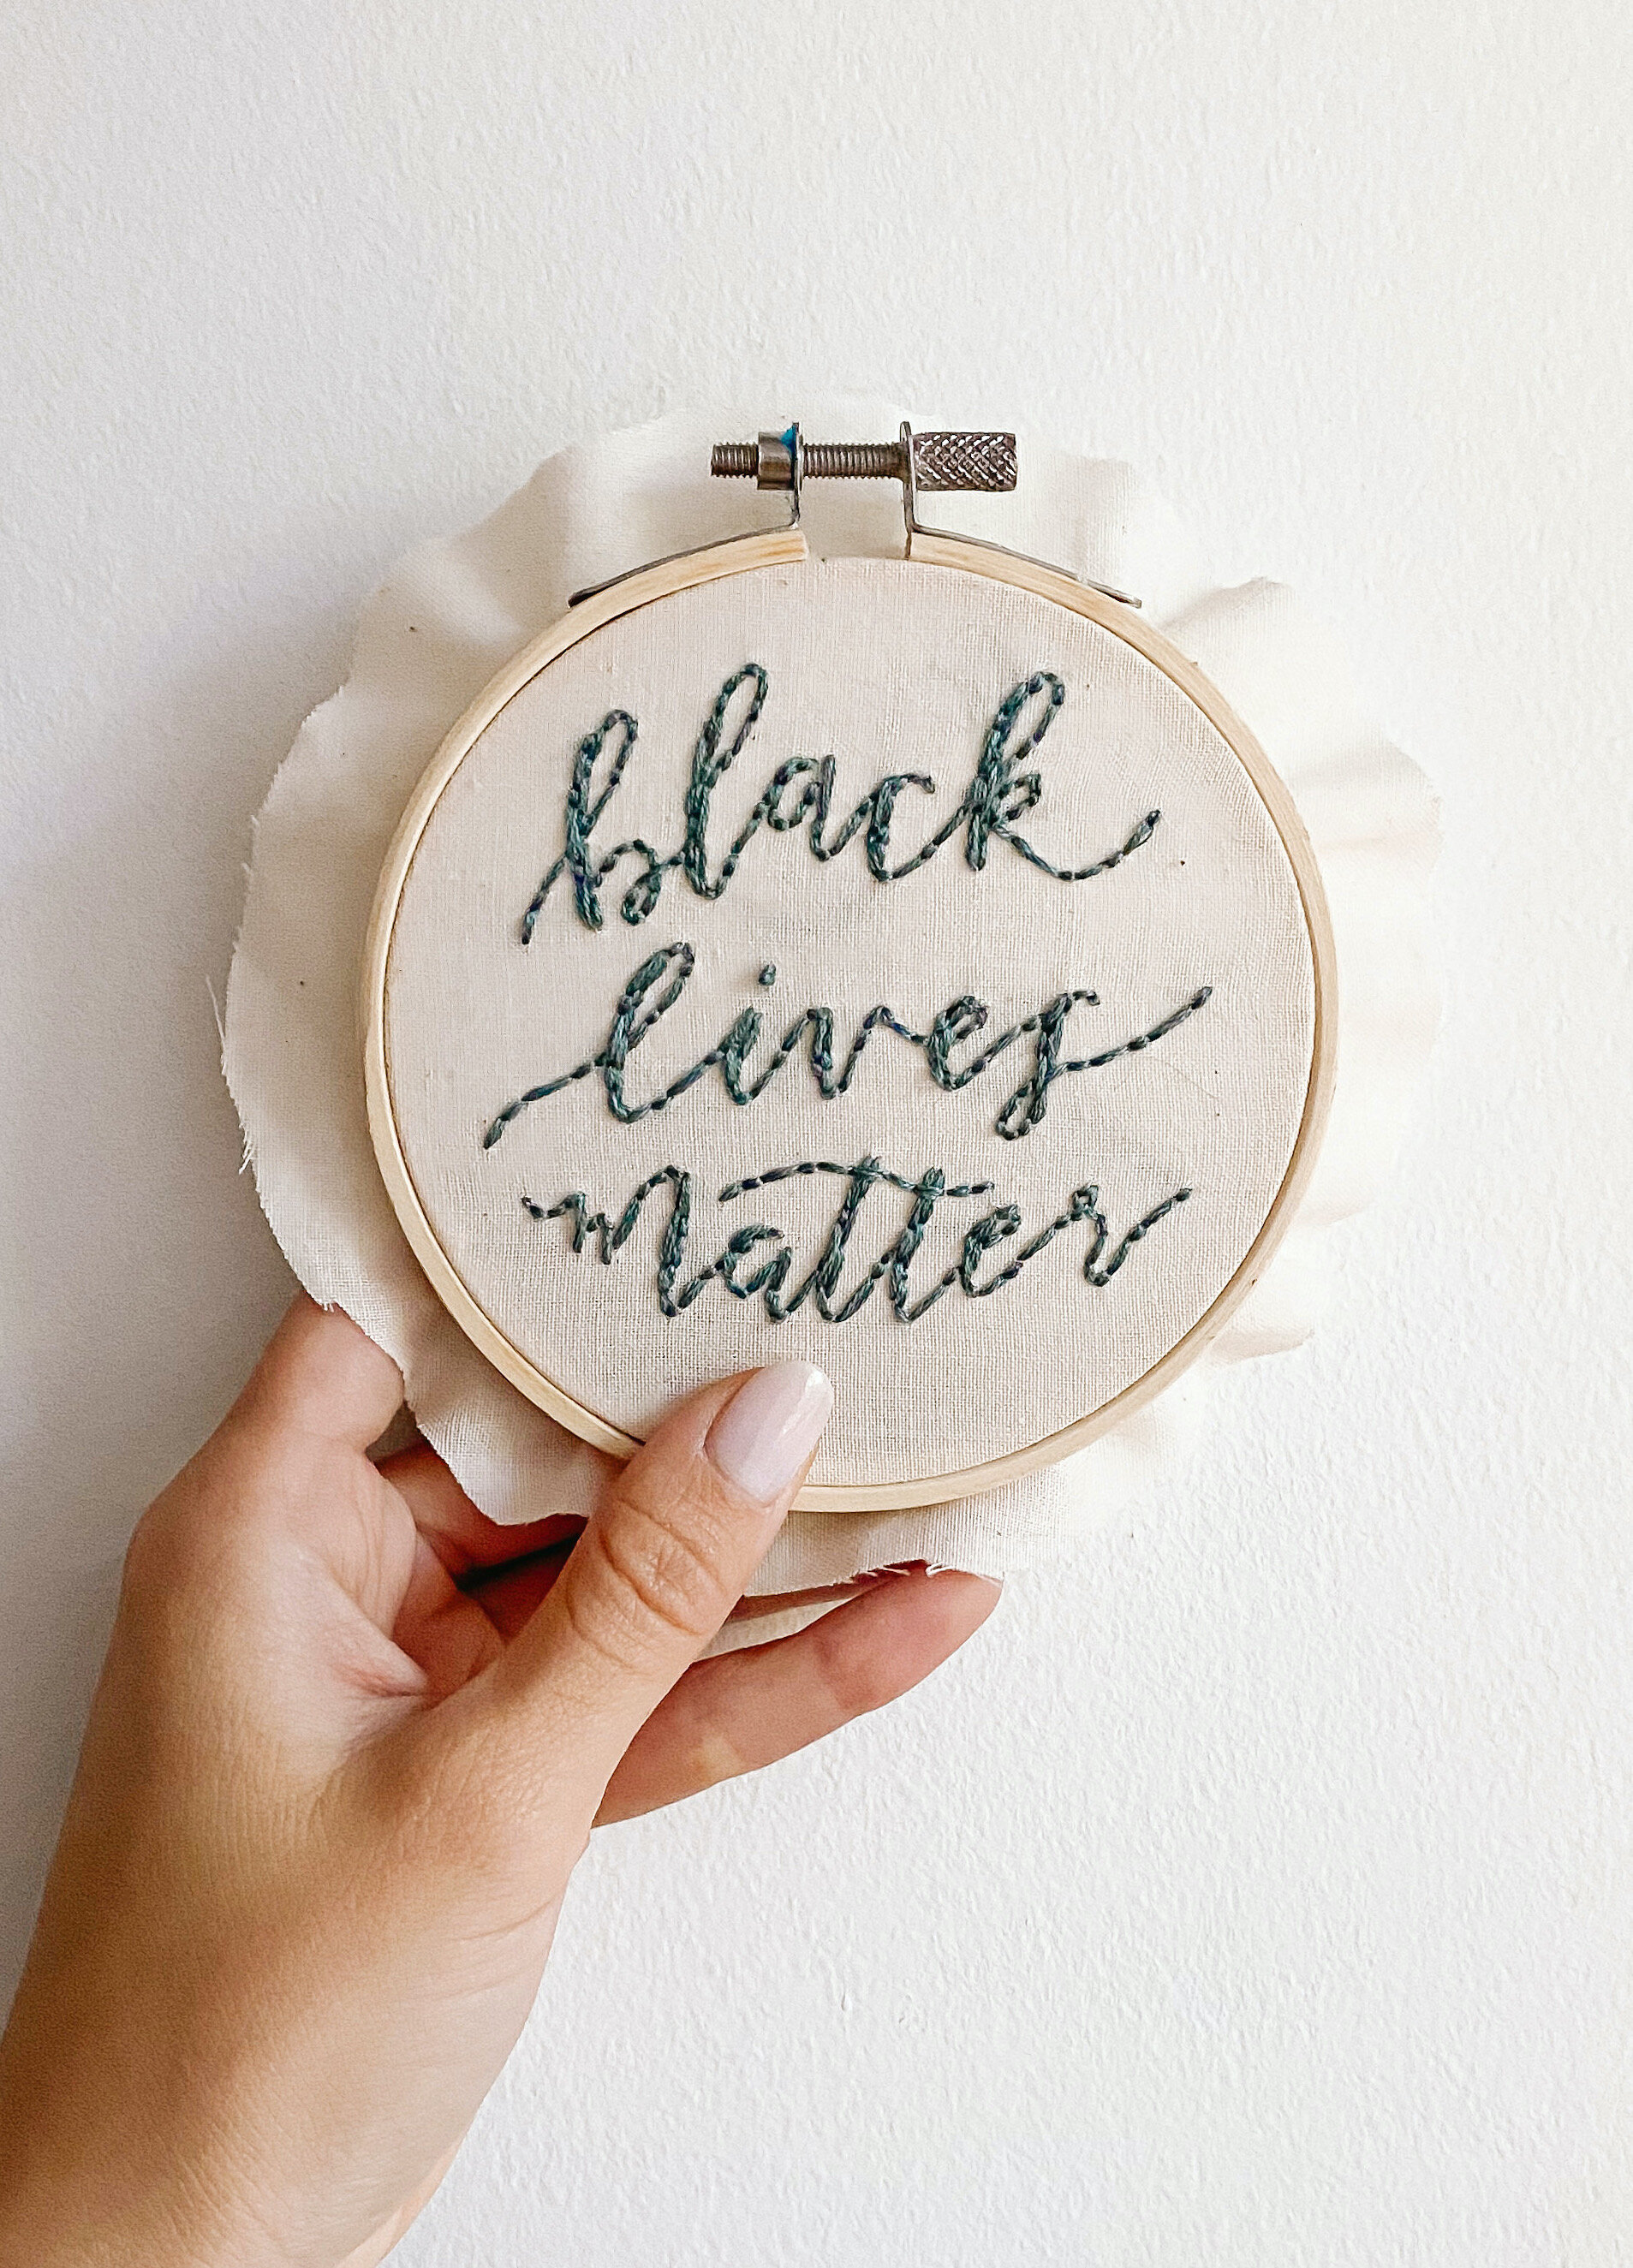 BLACK LIVES MATTER G Embroidery design file